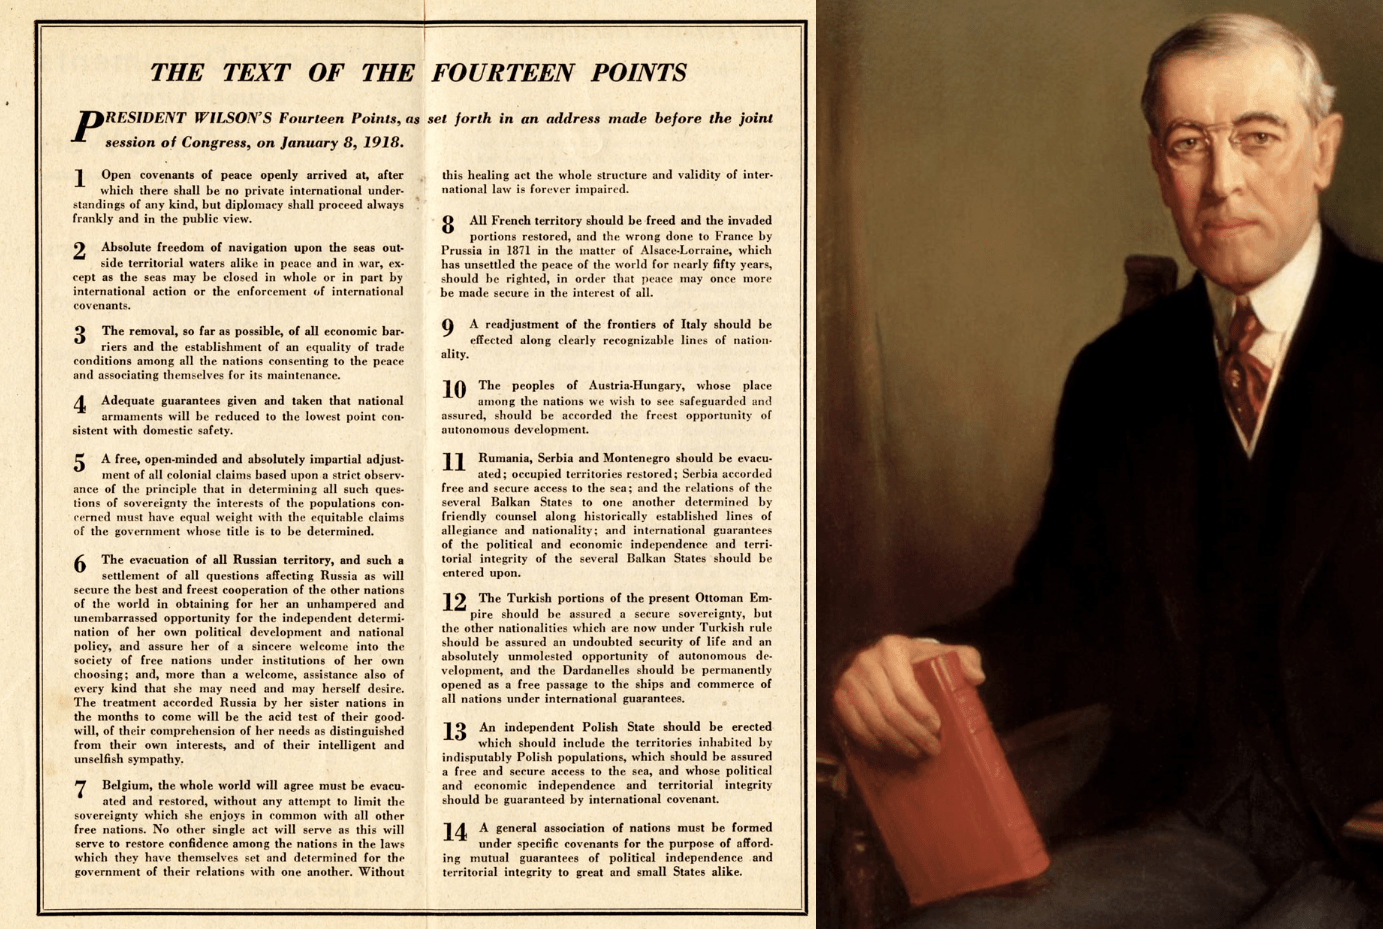 الرئيس ويلسون ومبادئه الـ 14